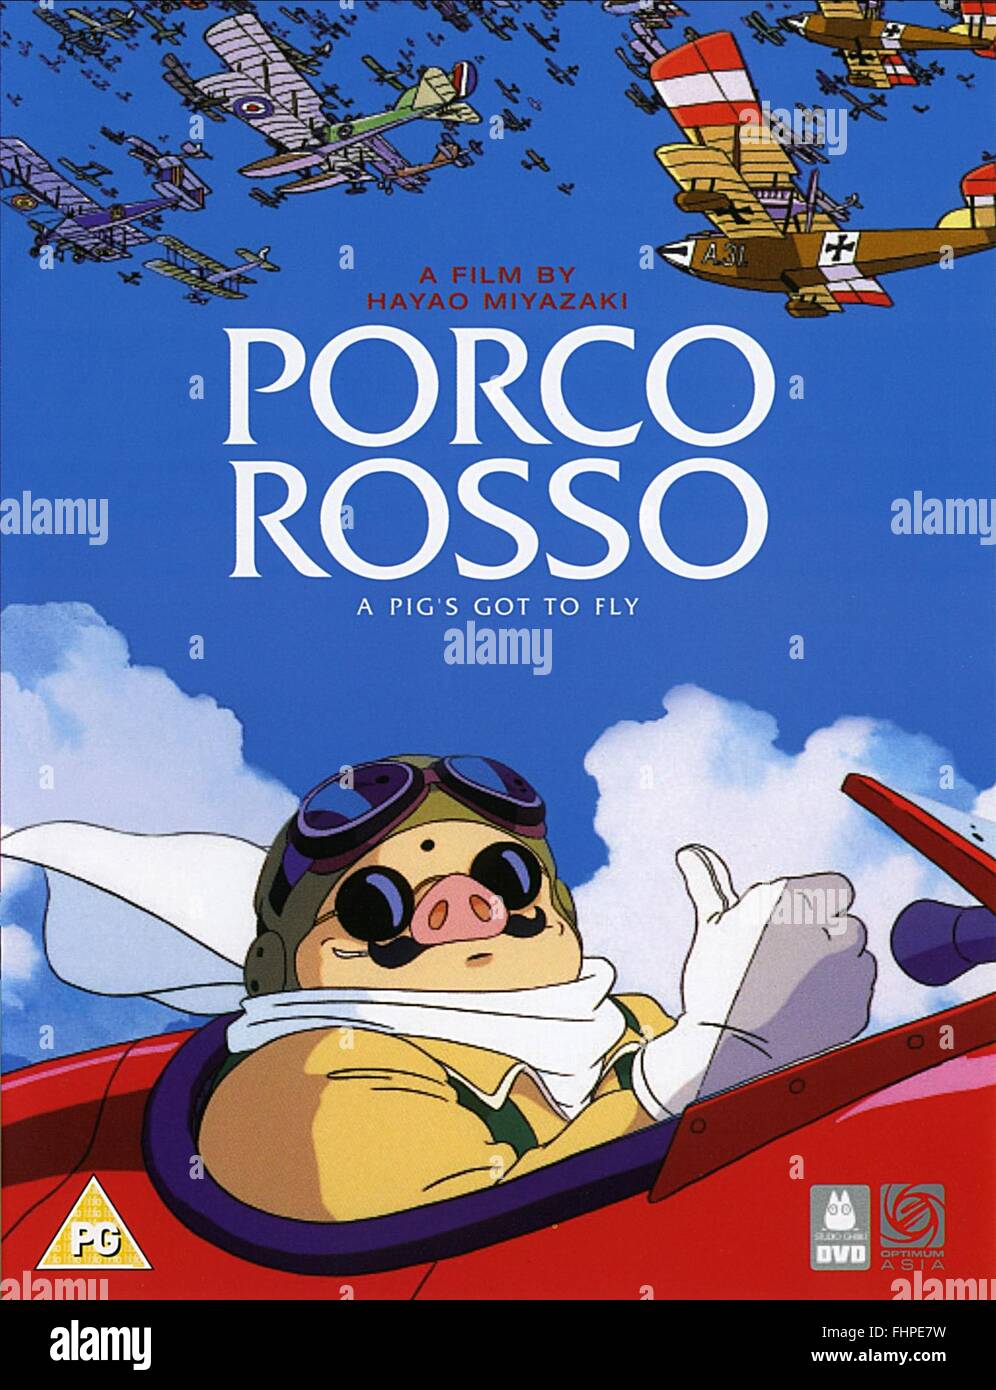 Porco-Rosso-anime-movies